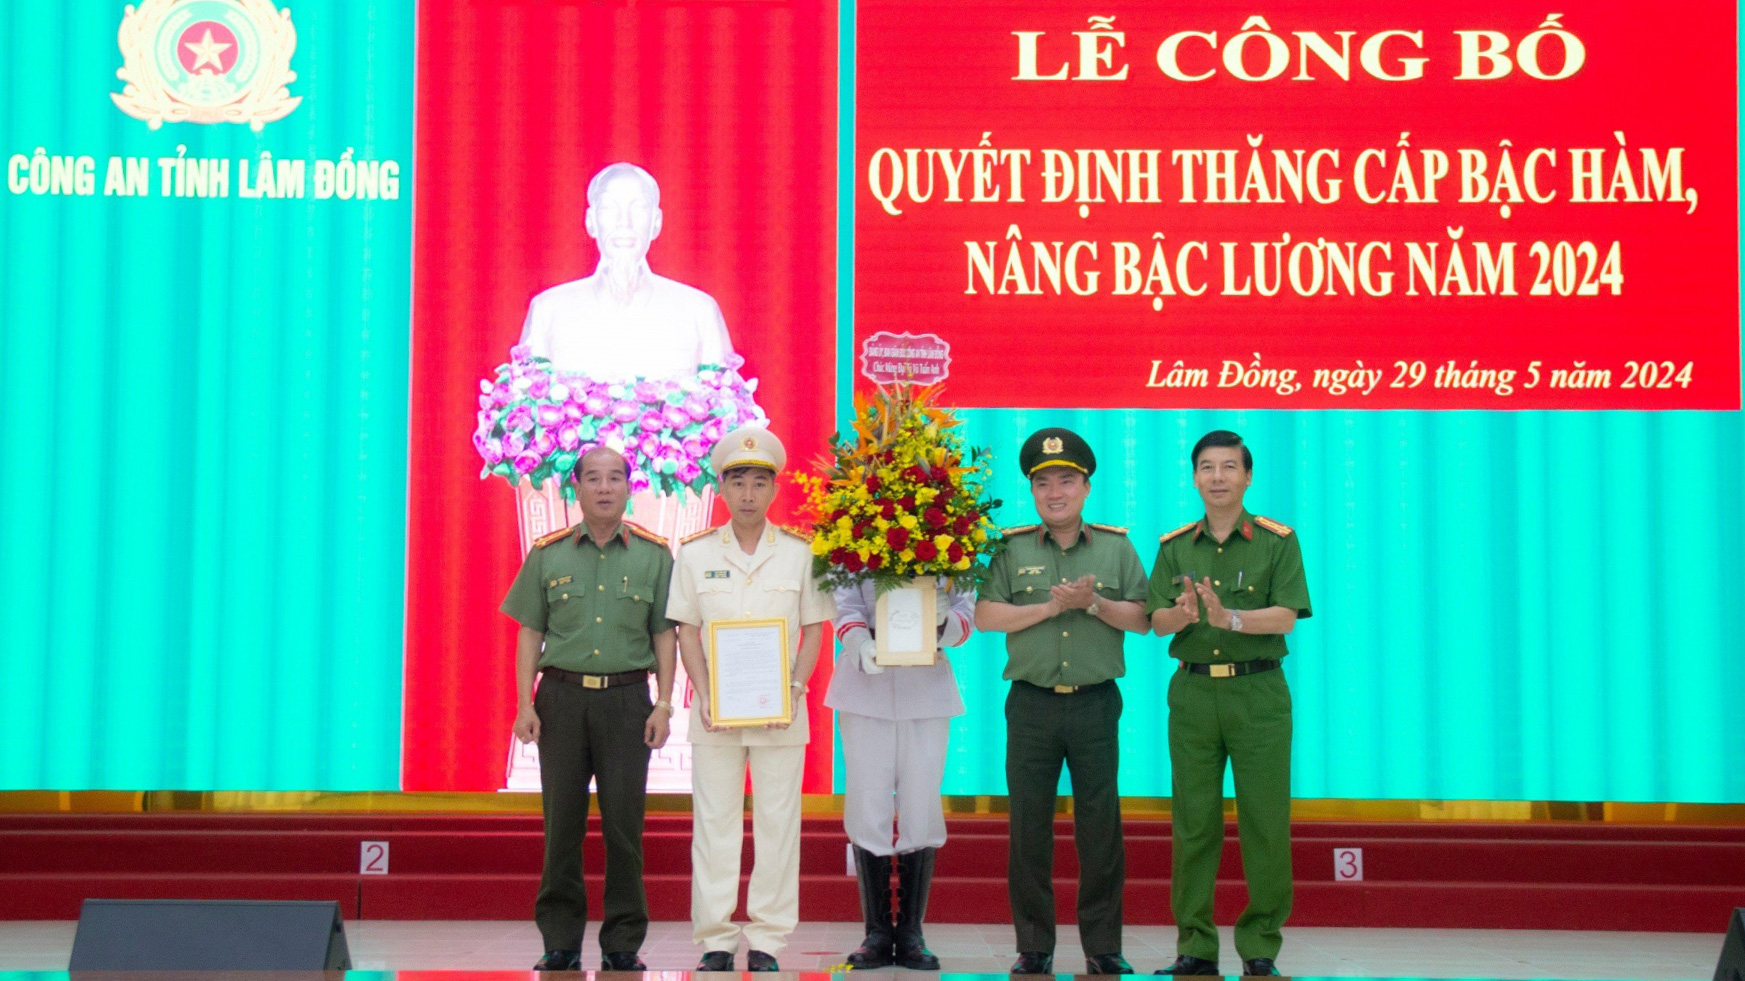 999 chiến sĩ Công an Lâm Đồng được thăng cấp bậc hàm, nâng bậc lương năm 2024